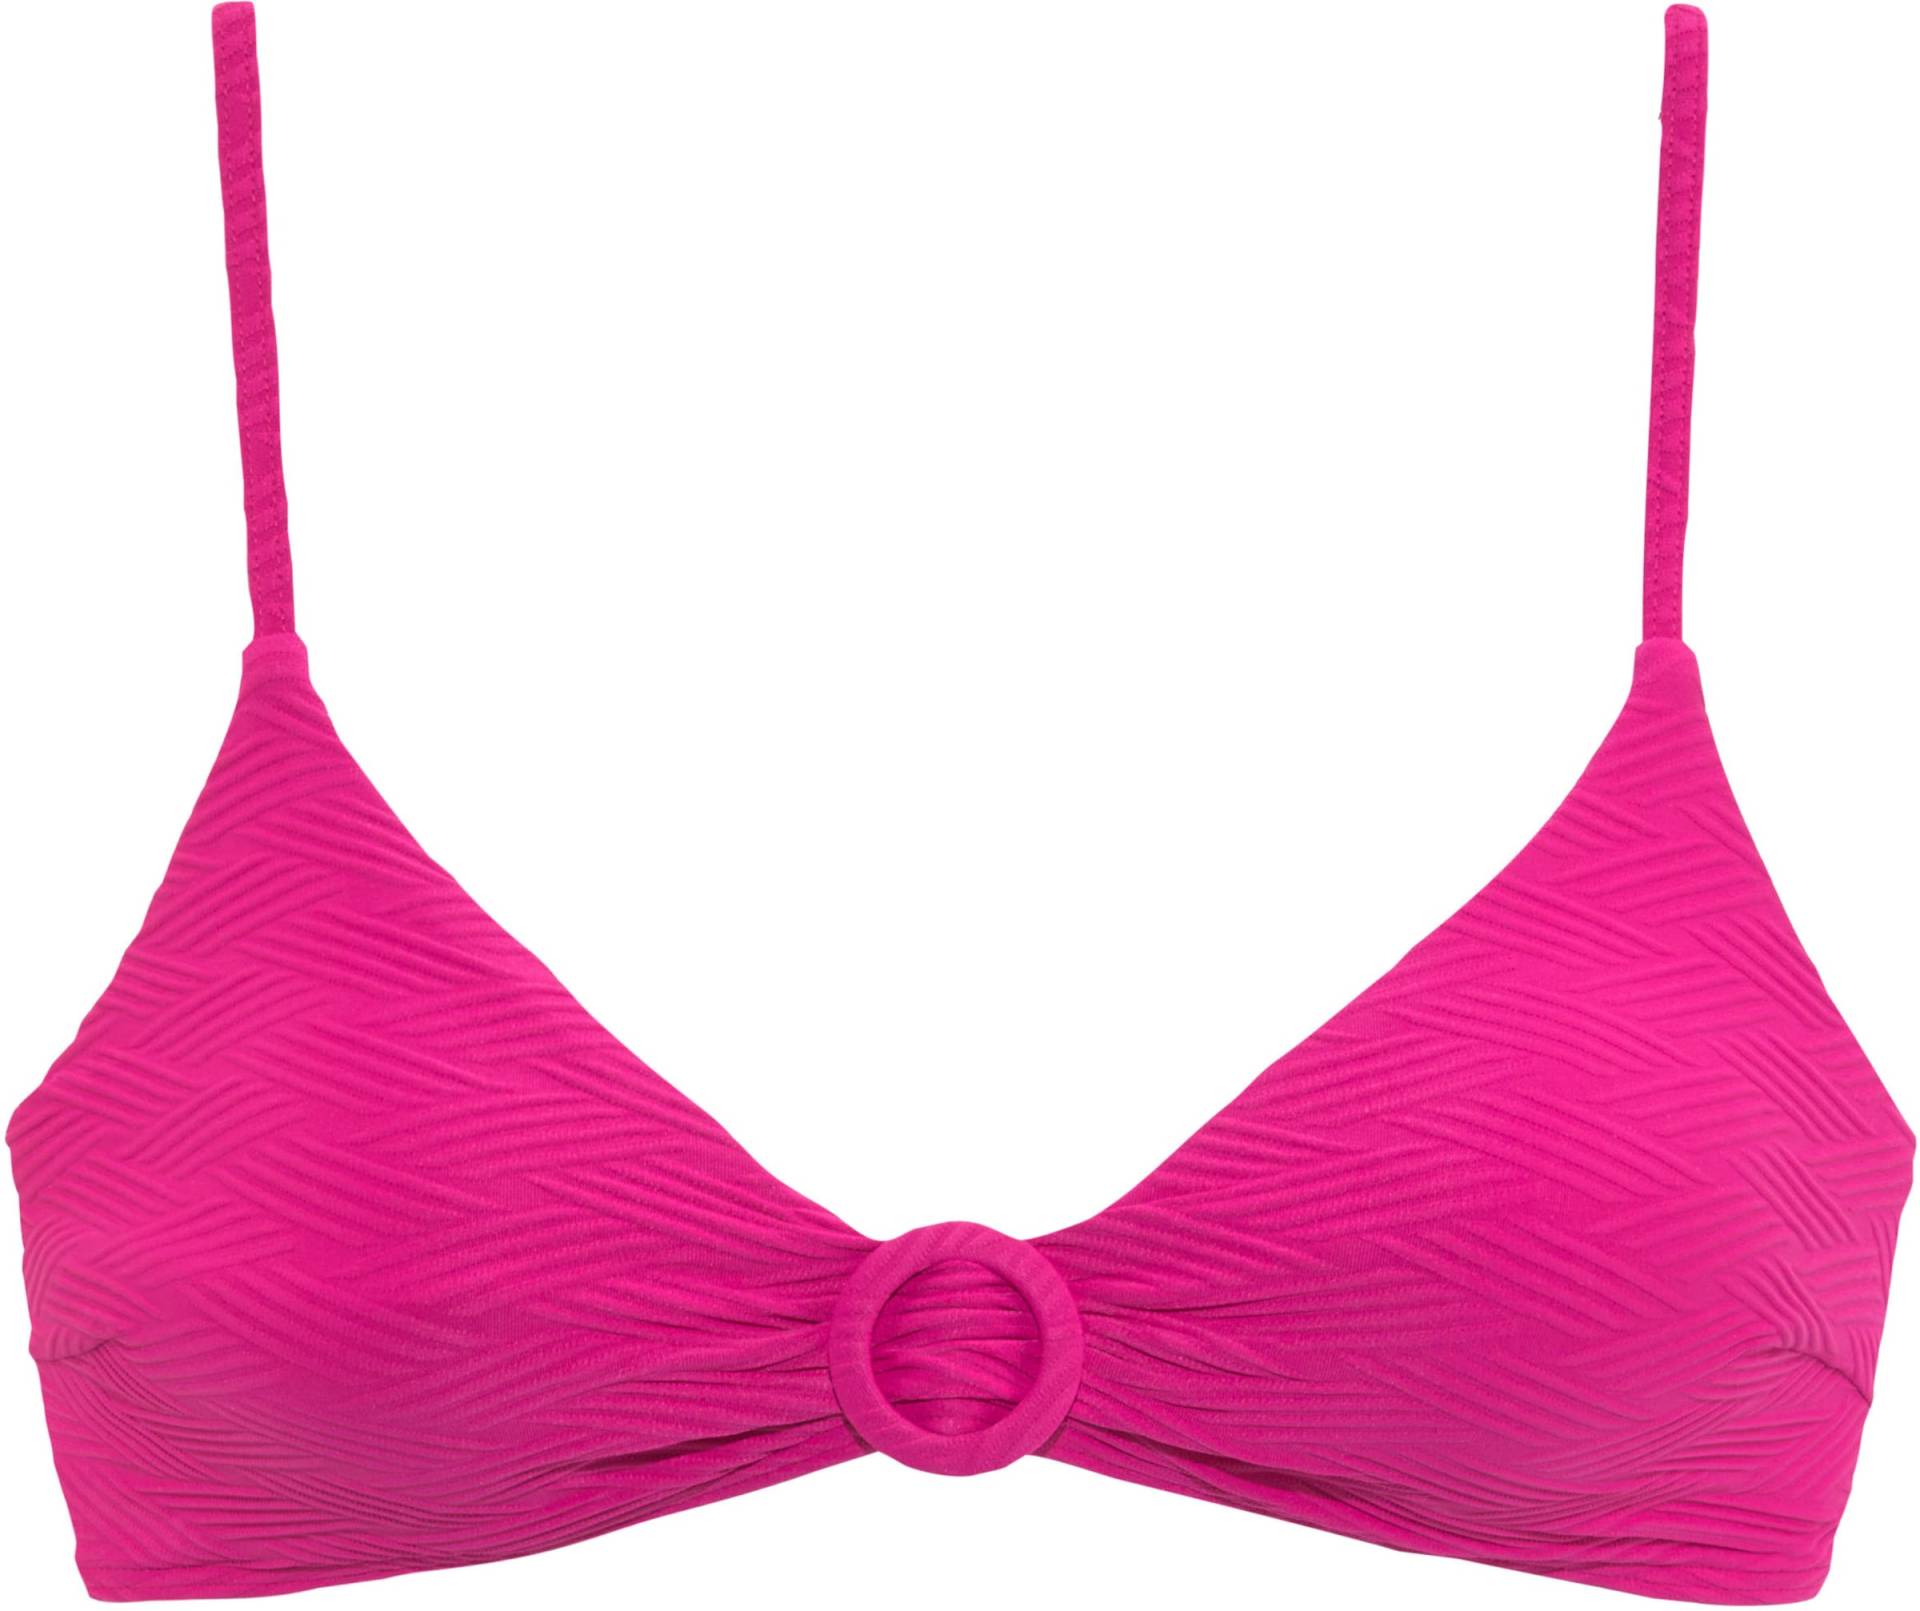 Triangel-Bikini-Top in pink von Sunseeker